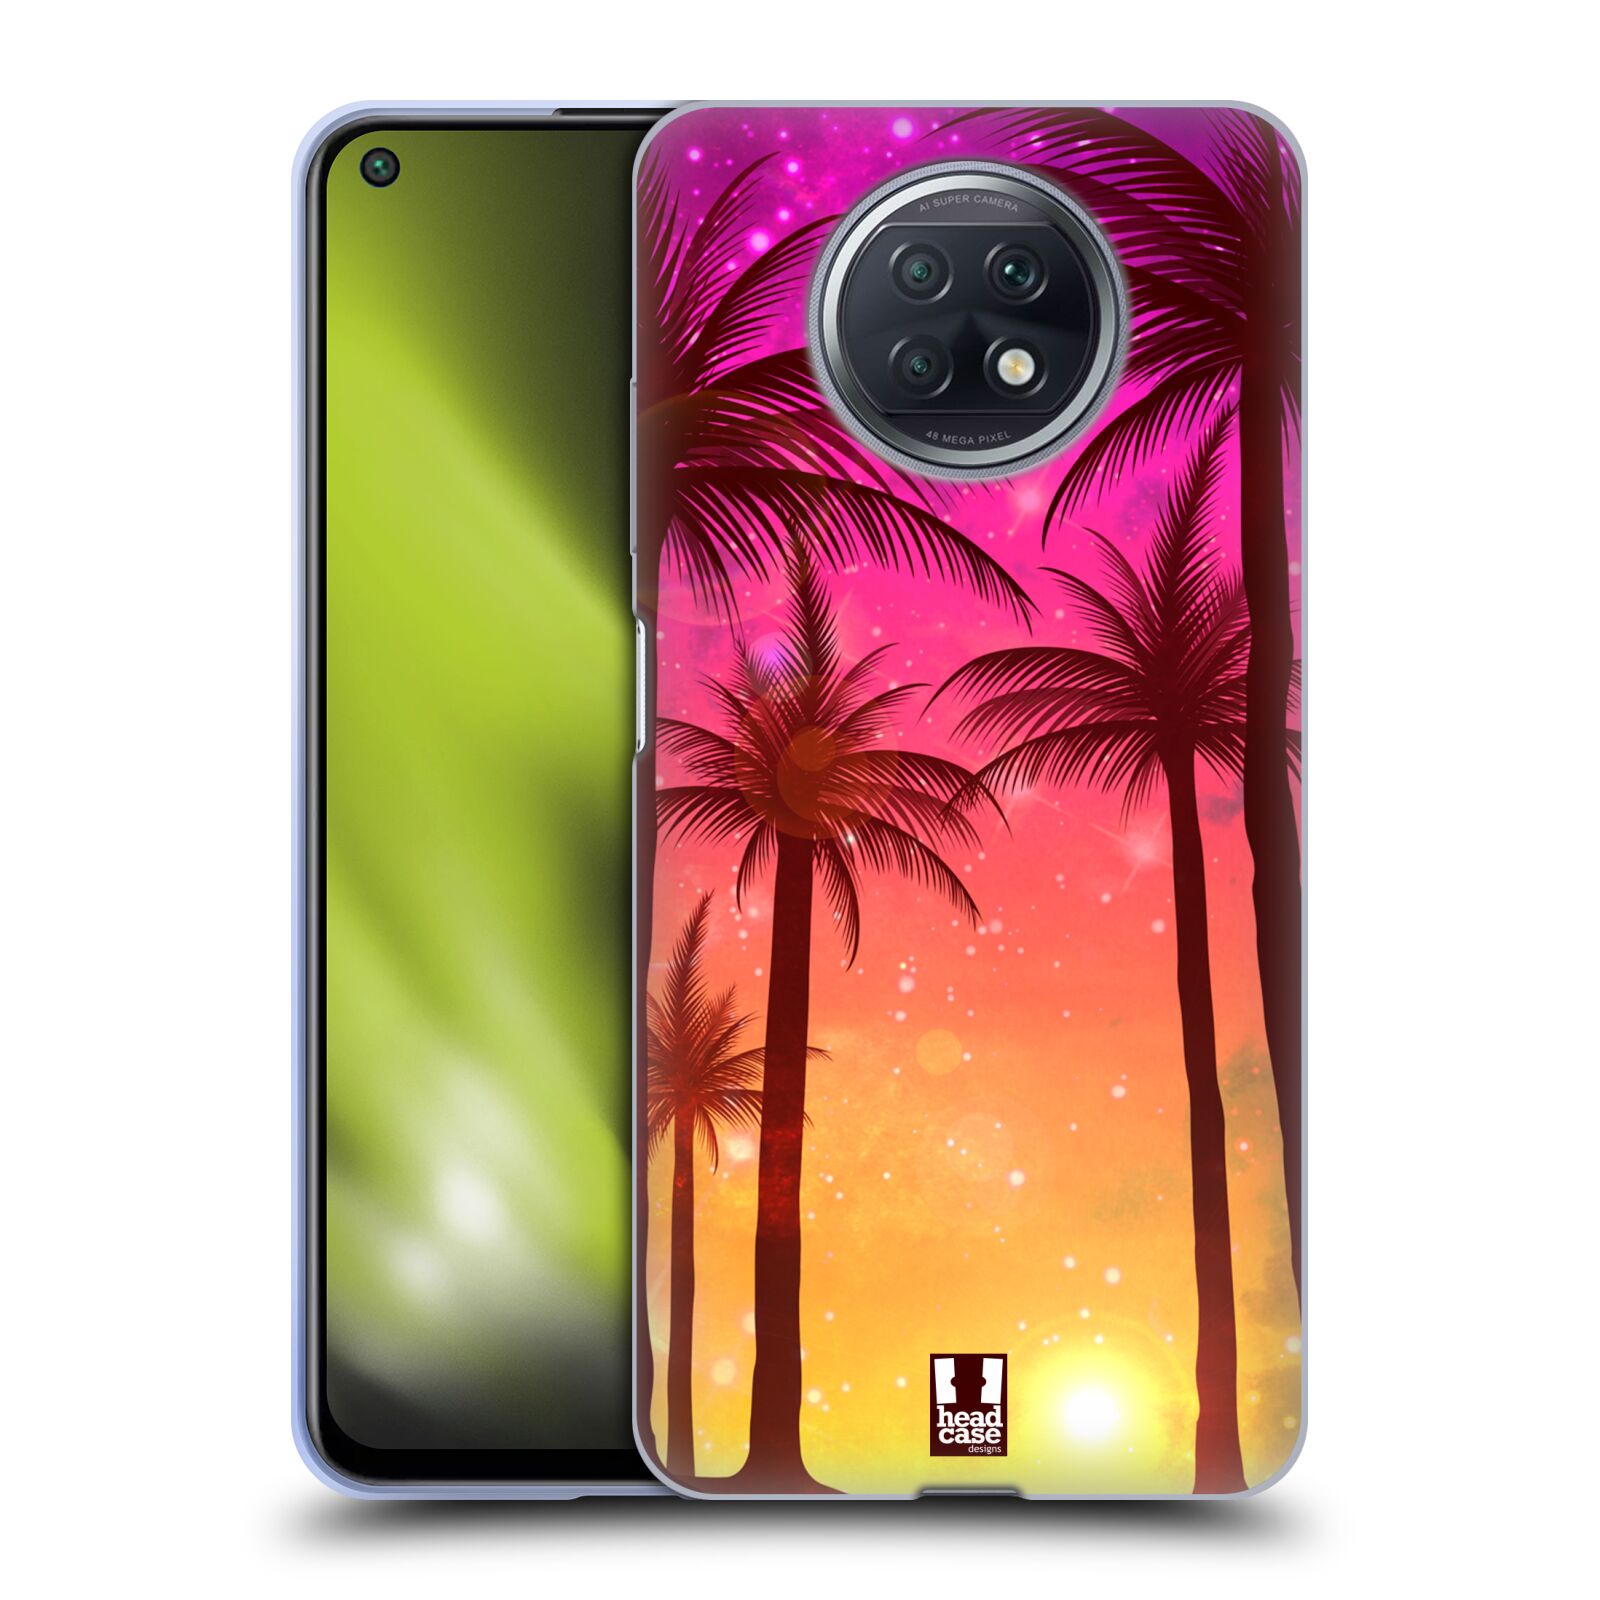 Plastový obal HEAD CASE na mobil Xiaomi Redmi Note 9T vzor Kreslený motiv silueta moře a palmy RŮŽOVÁ